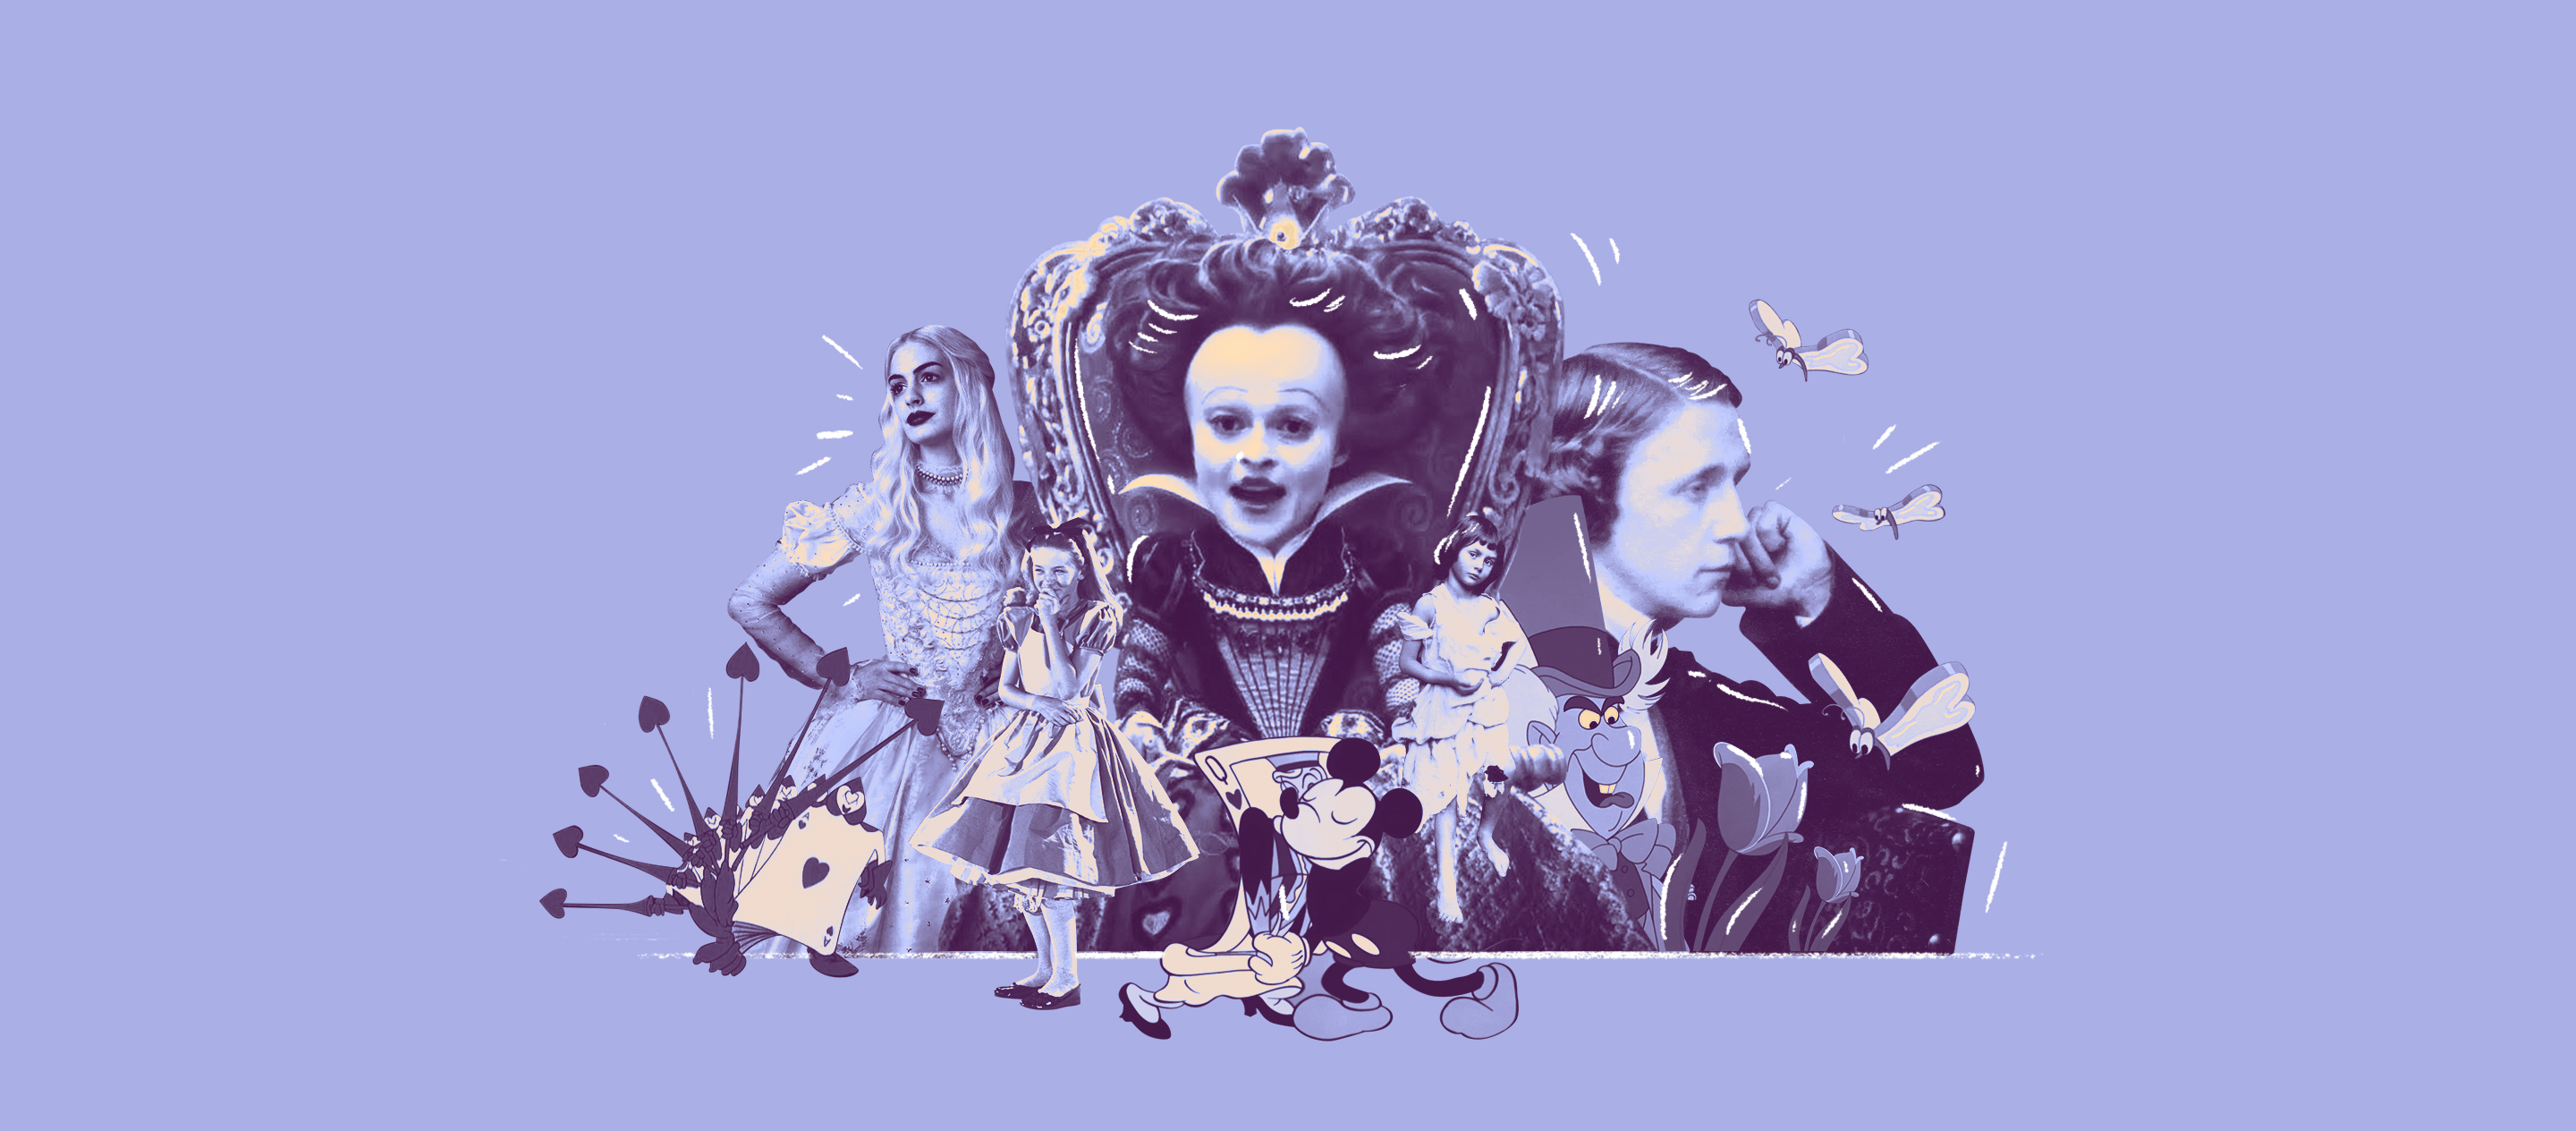 จิตวิทยาของ Alice in Wonderland วรรณกรรมอายุกว่า 100 ปีที่หยิบมาทำกี่ทีก็ประสบความสำเร็จ